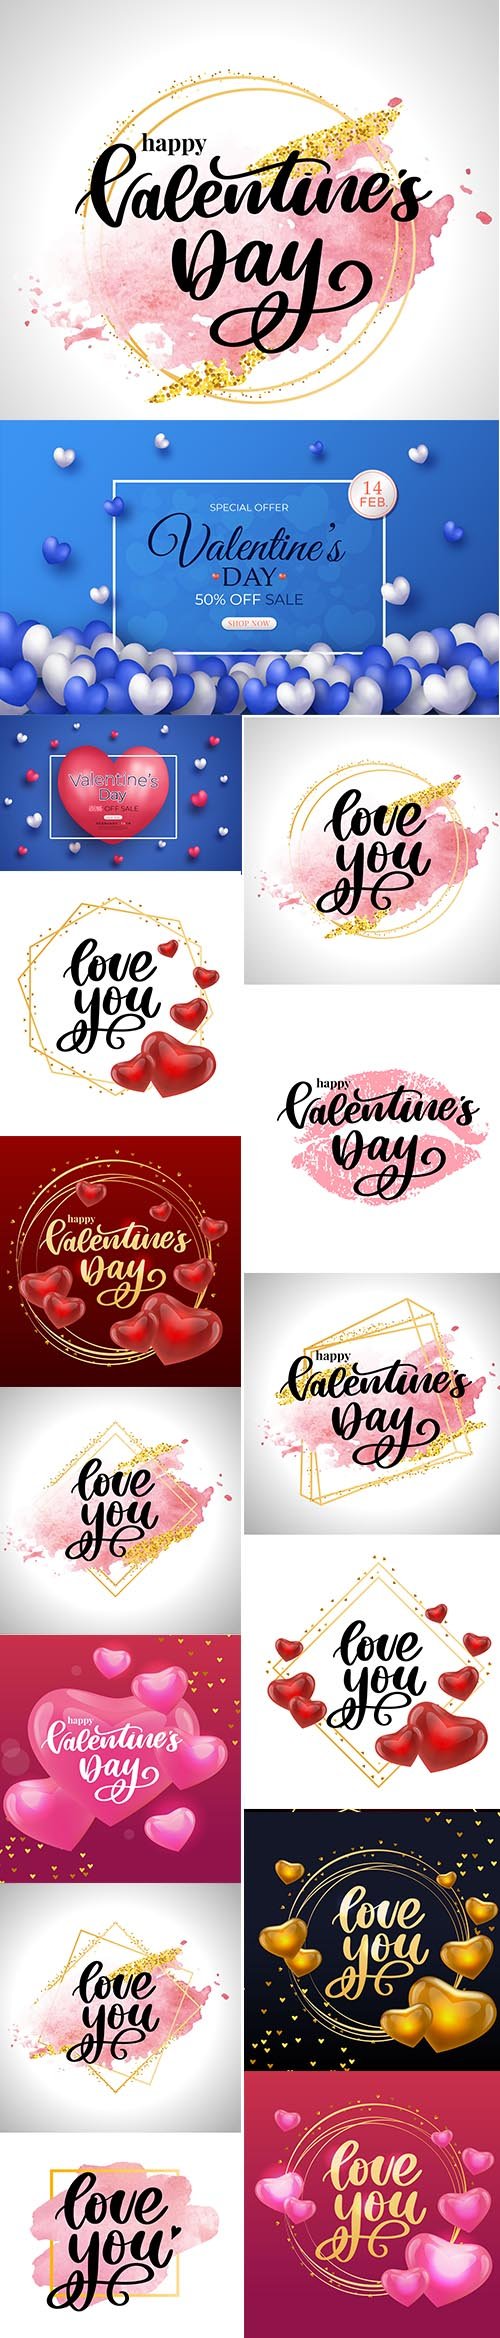 Happy Valentines Day Illustration Set Vol 4